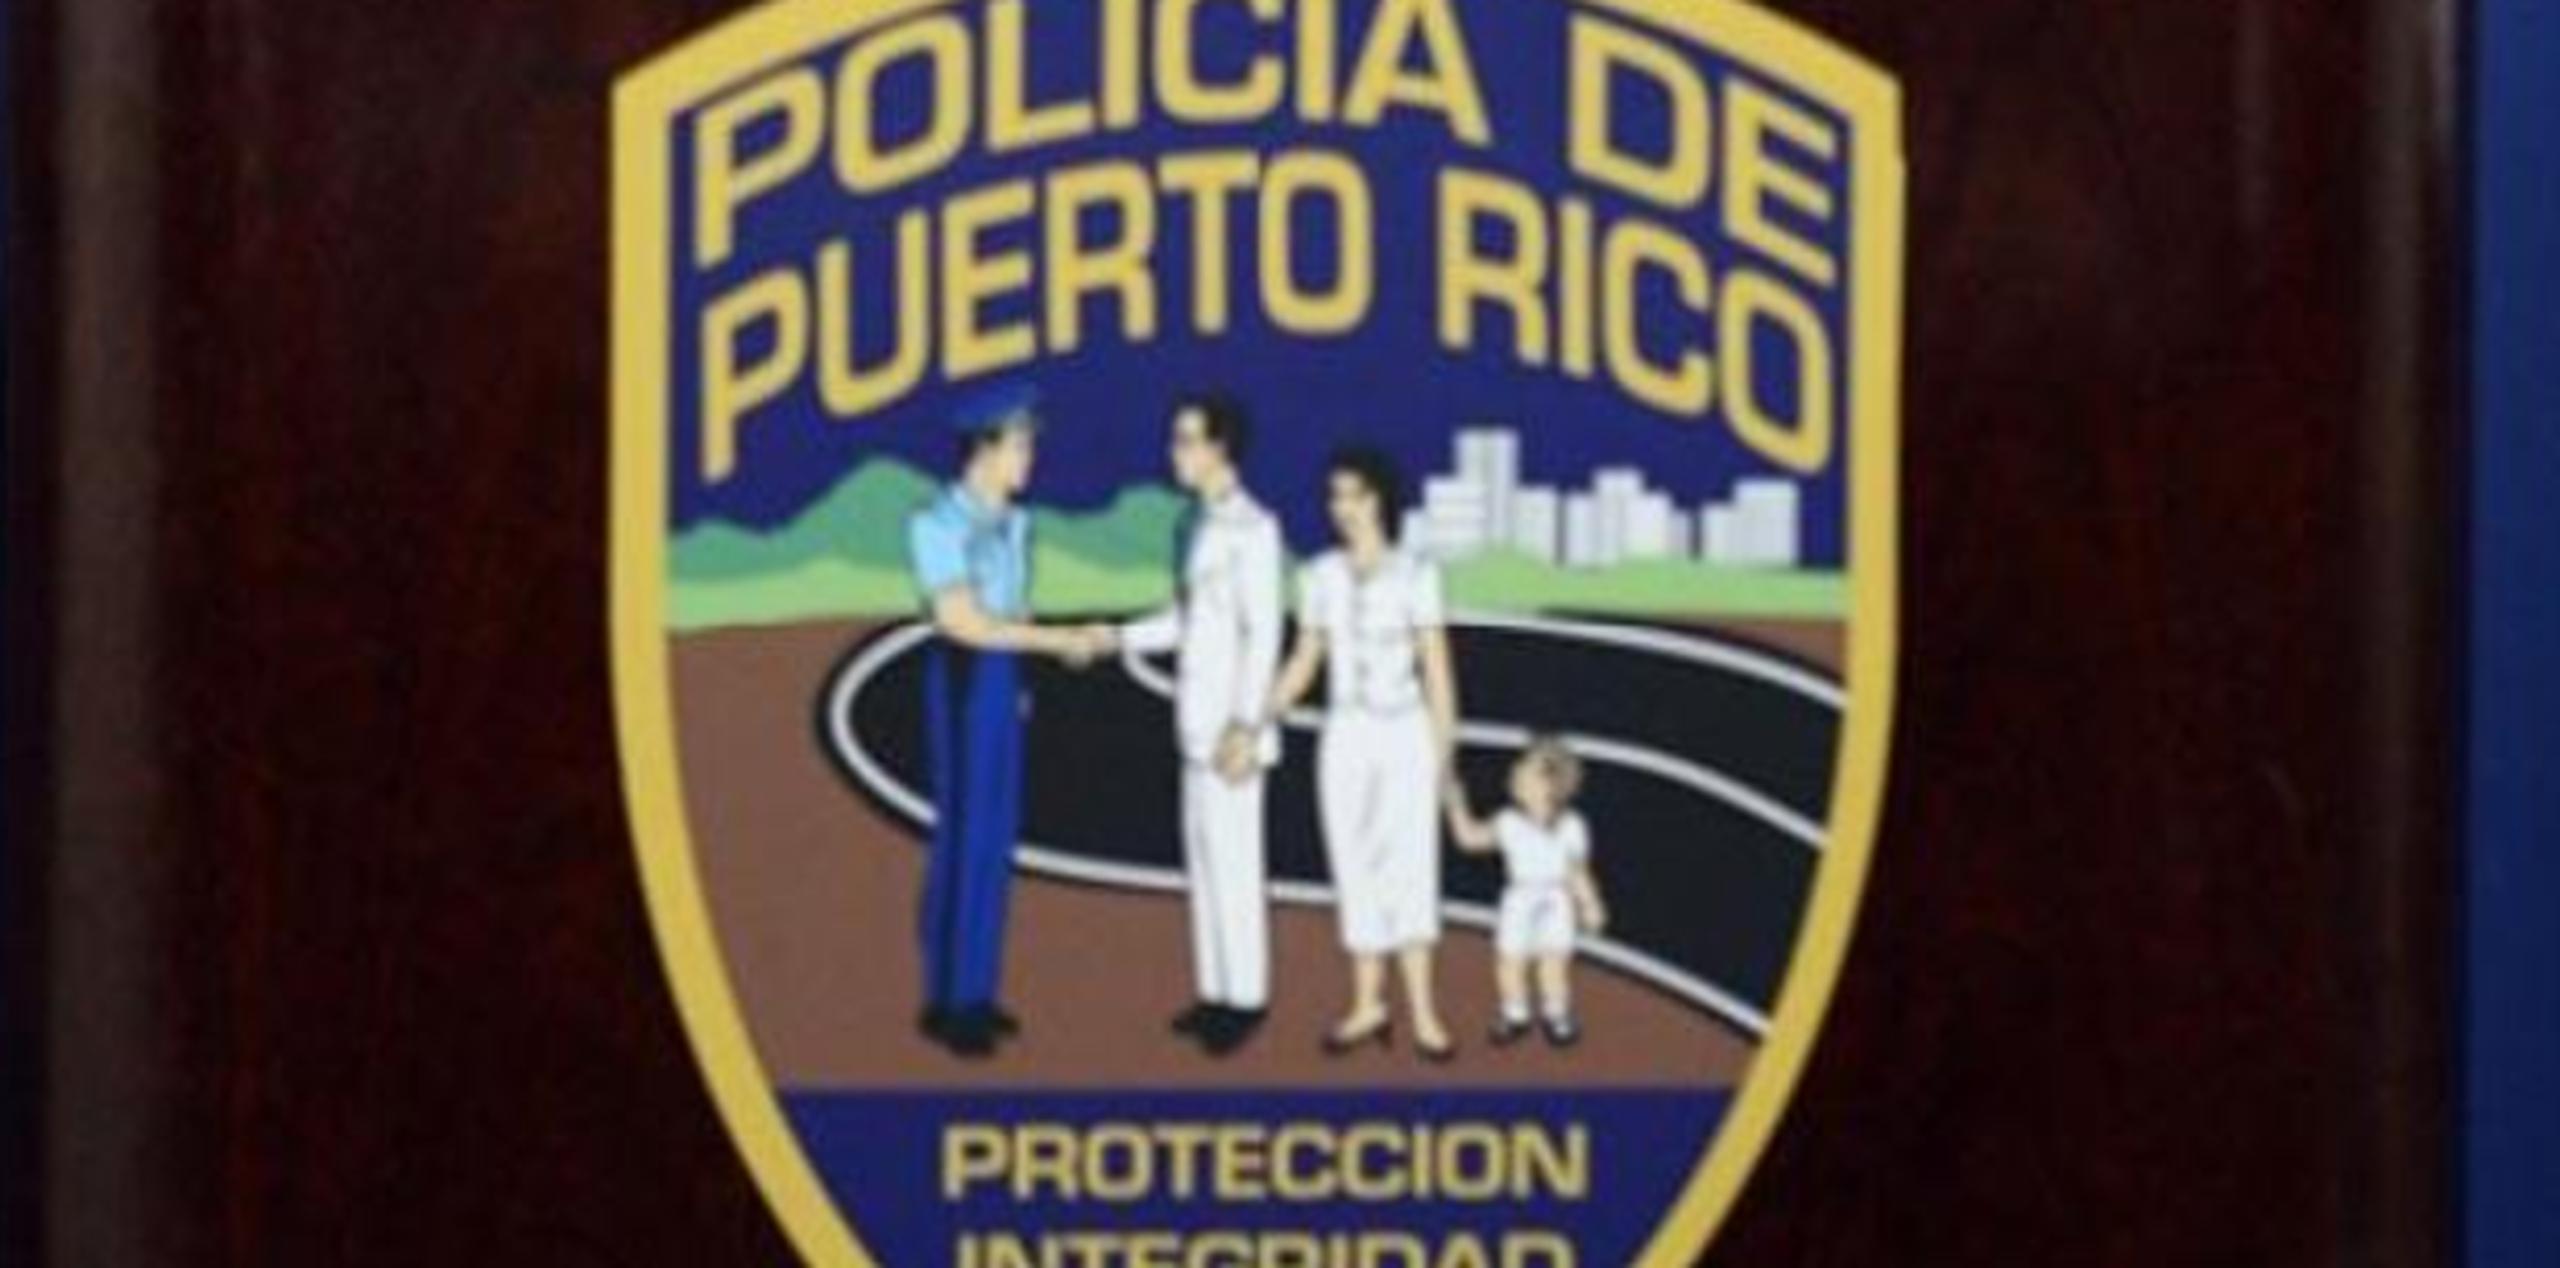 El individuo tiene una orden de arresto pendiente en el área de Ponce por el delito de robo. (Archivo)